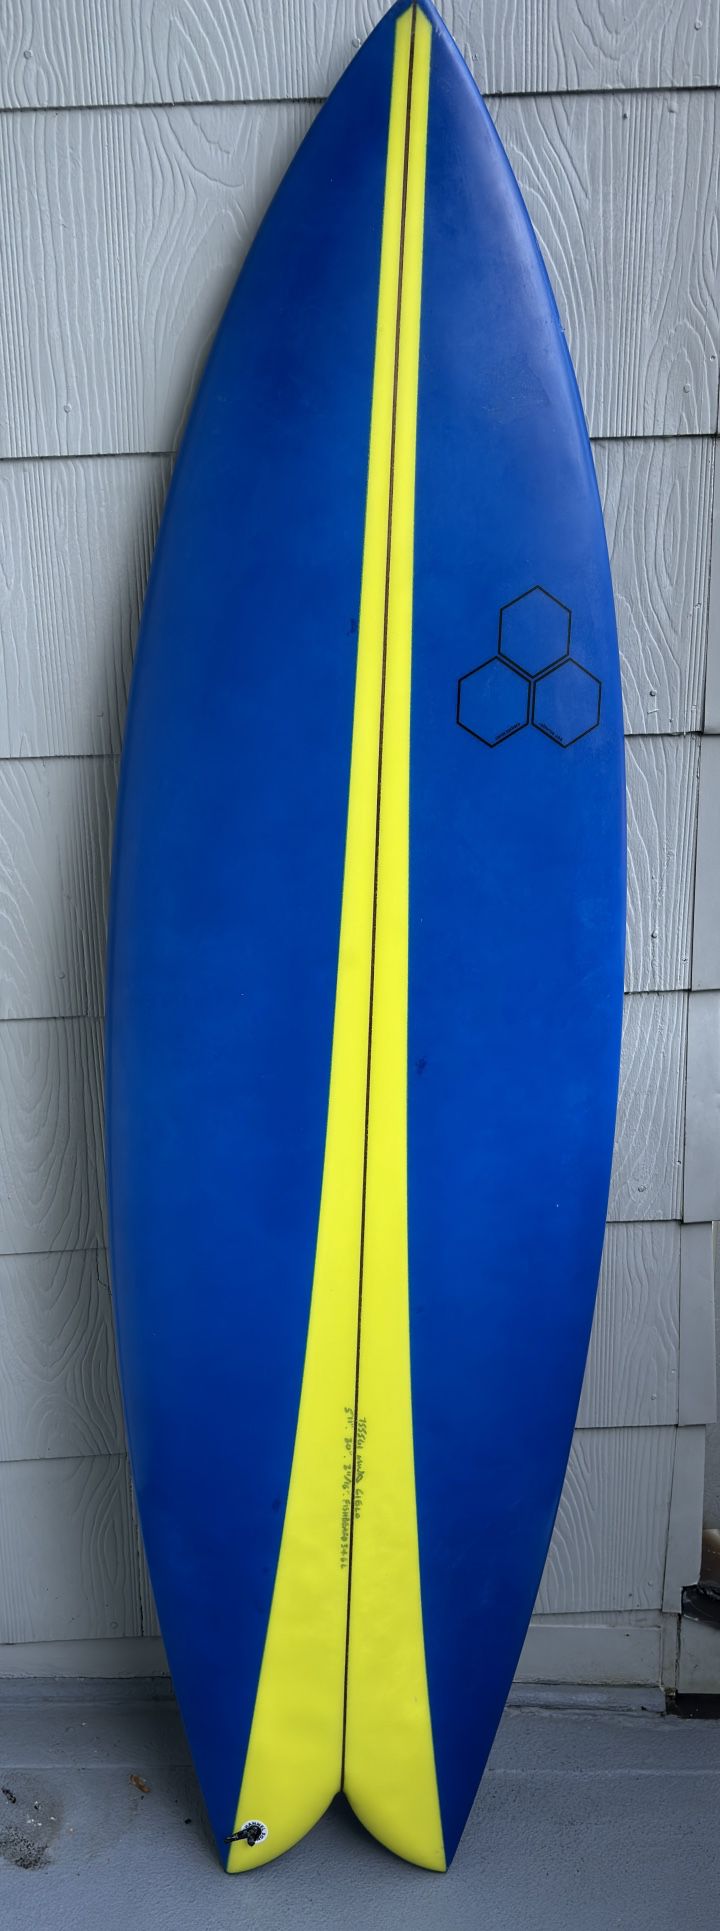 Surfboard - Channel Island